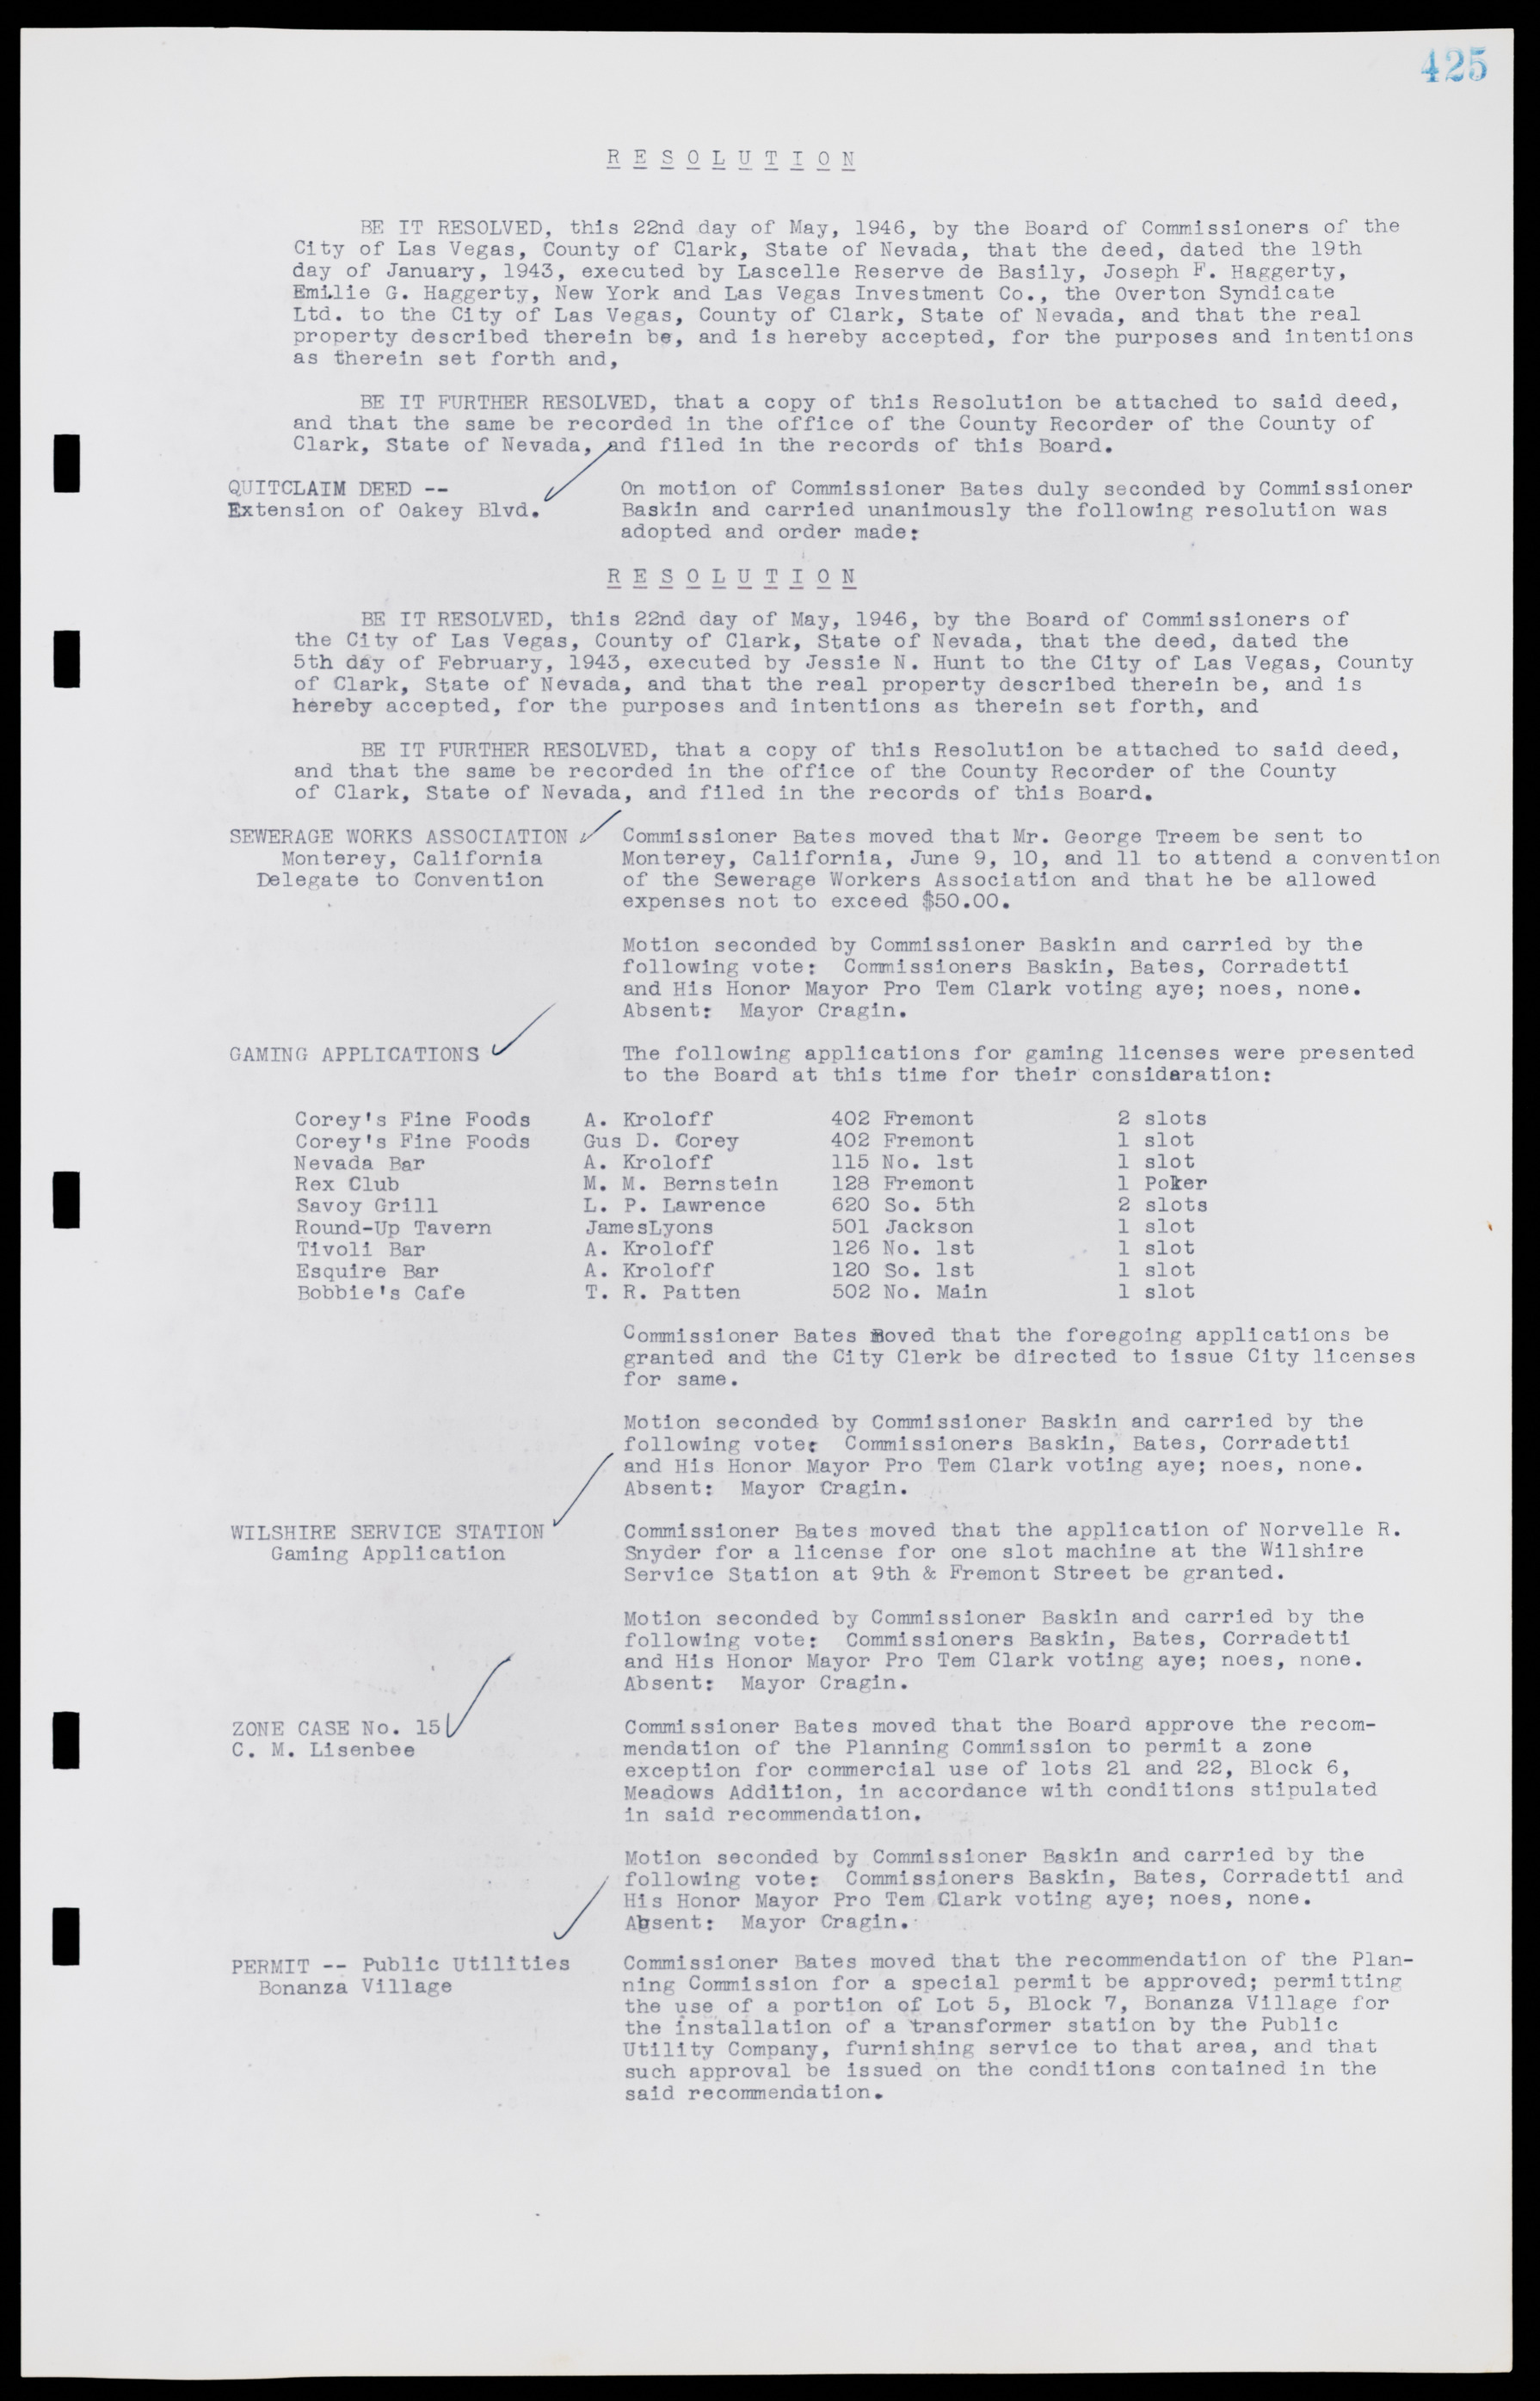 Las Vegas City Commission Minutes, August 11, 1942 to December 30, 1946, lvc000005-453